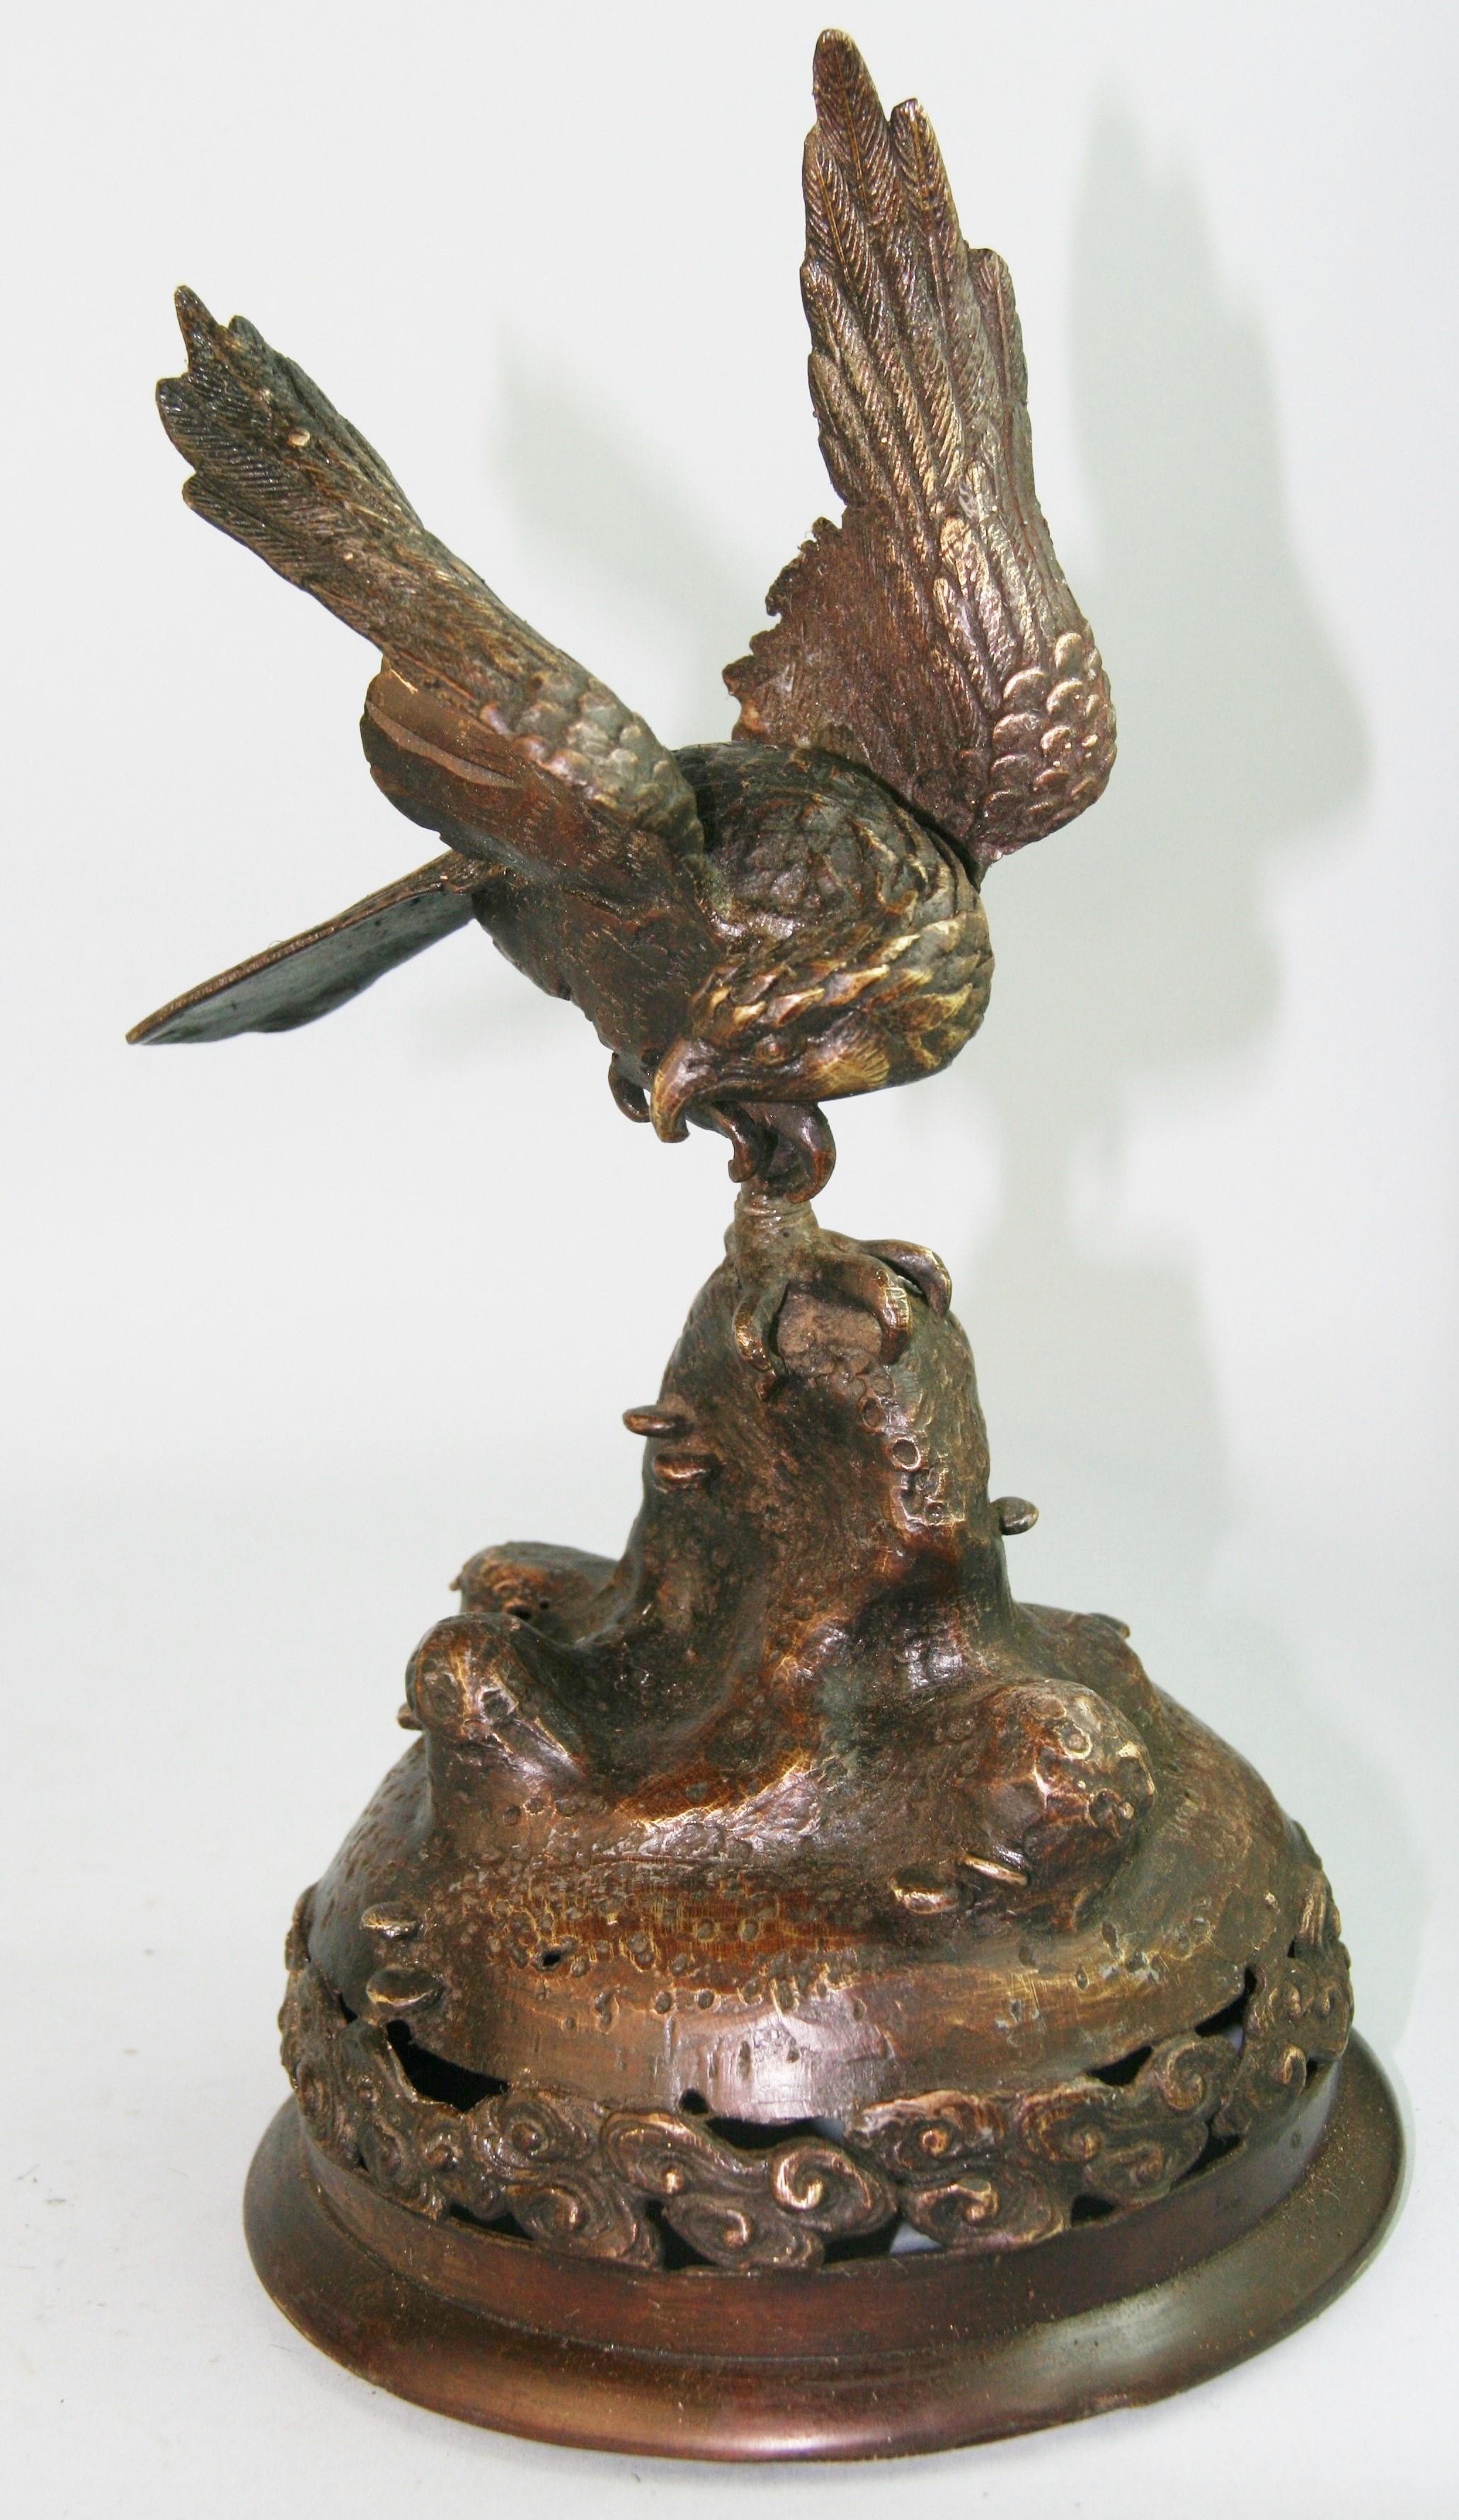 1231 Fein detailliert gegossener Bronze-Falke als Raumwächter  Skulptur.
In der japanischen Kultur sind Falken wegen ihres klugen Wesens ein Symbol für Glück und Erfolg. 